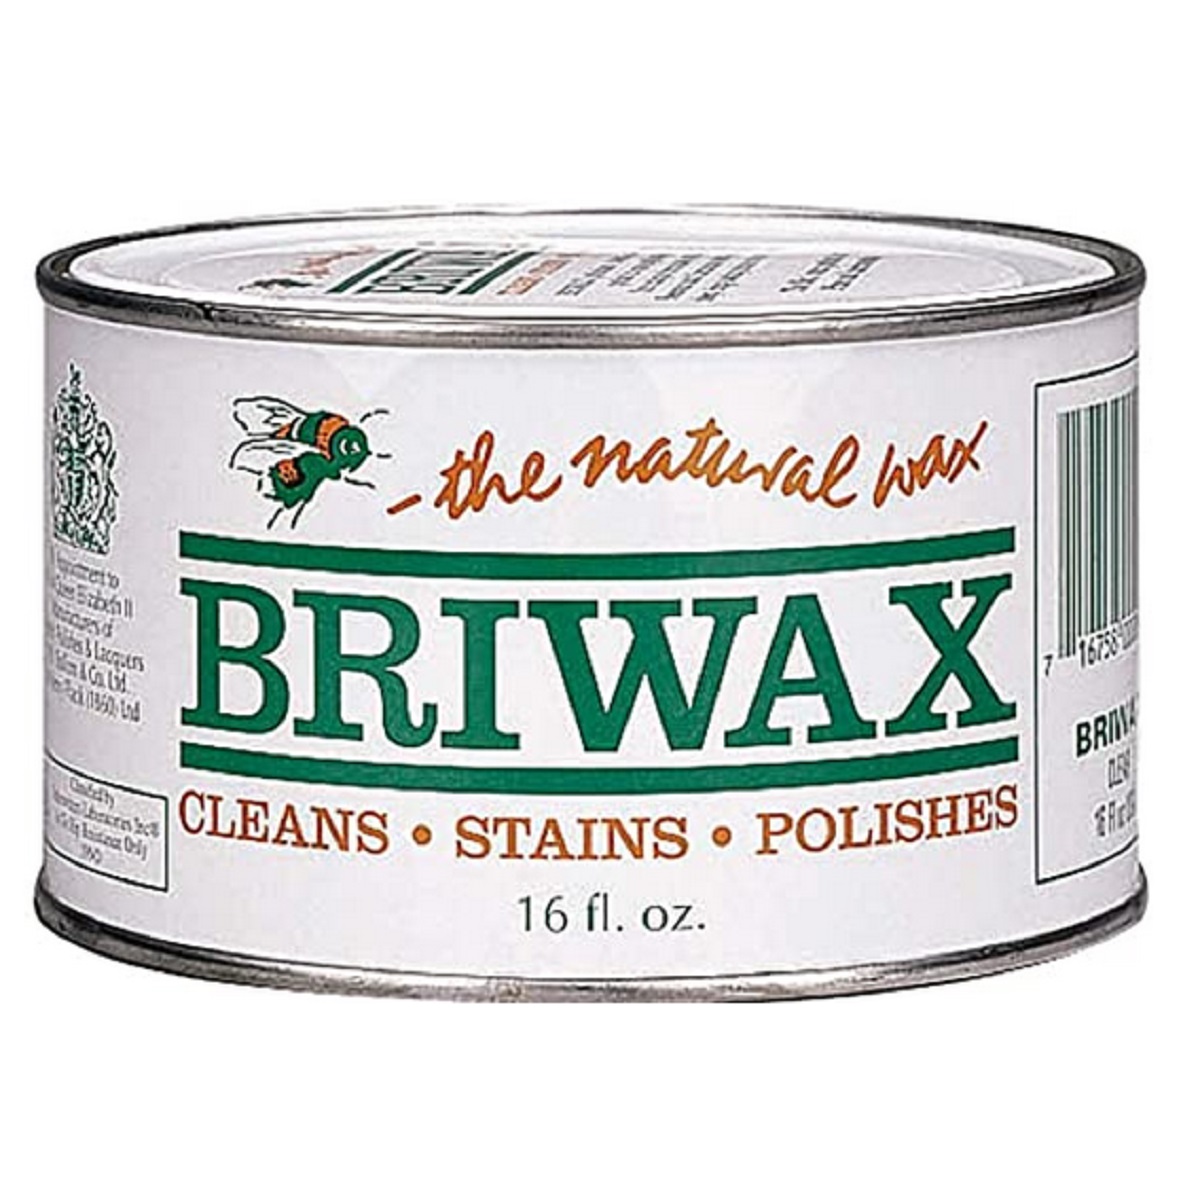 Briwax Dark Brown Wax, 16oz